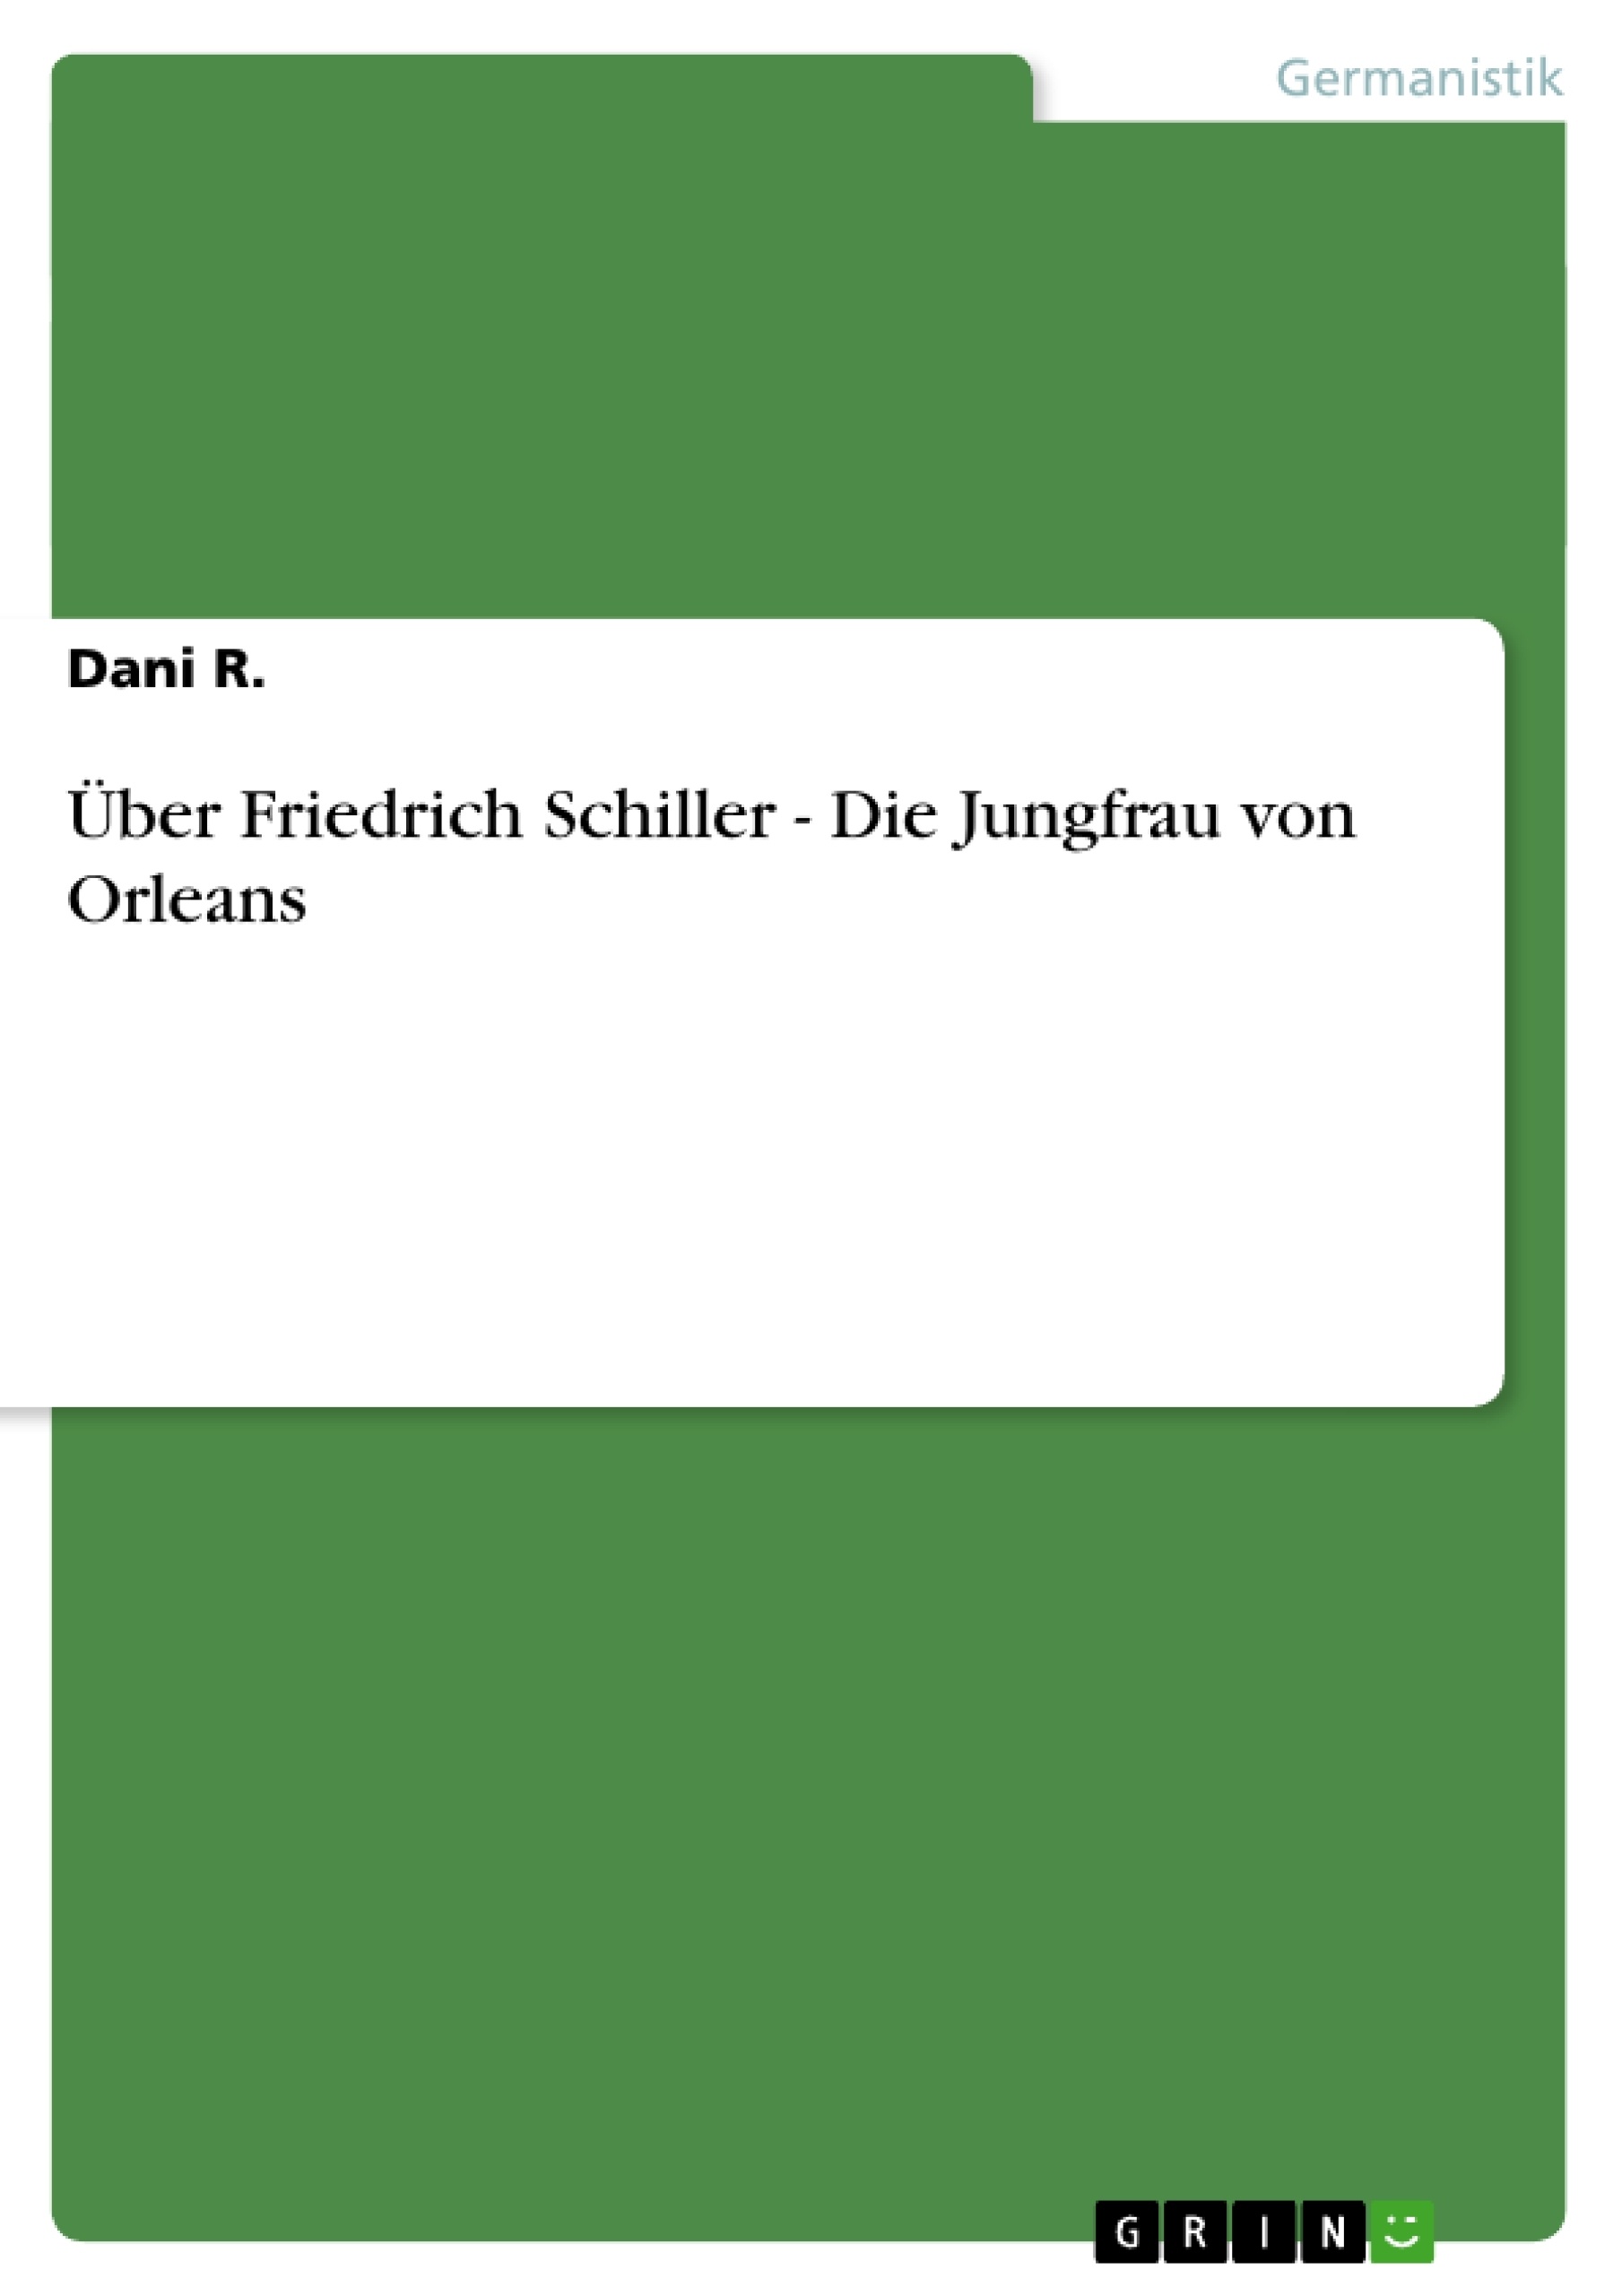 Title: Über Friedrich Schiller - Die Jungfrau von Orleans